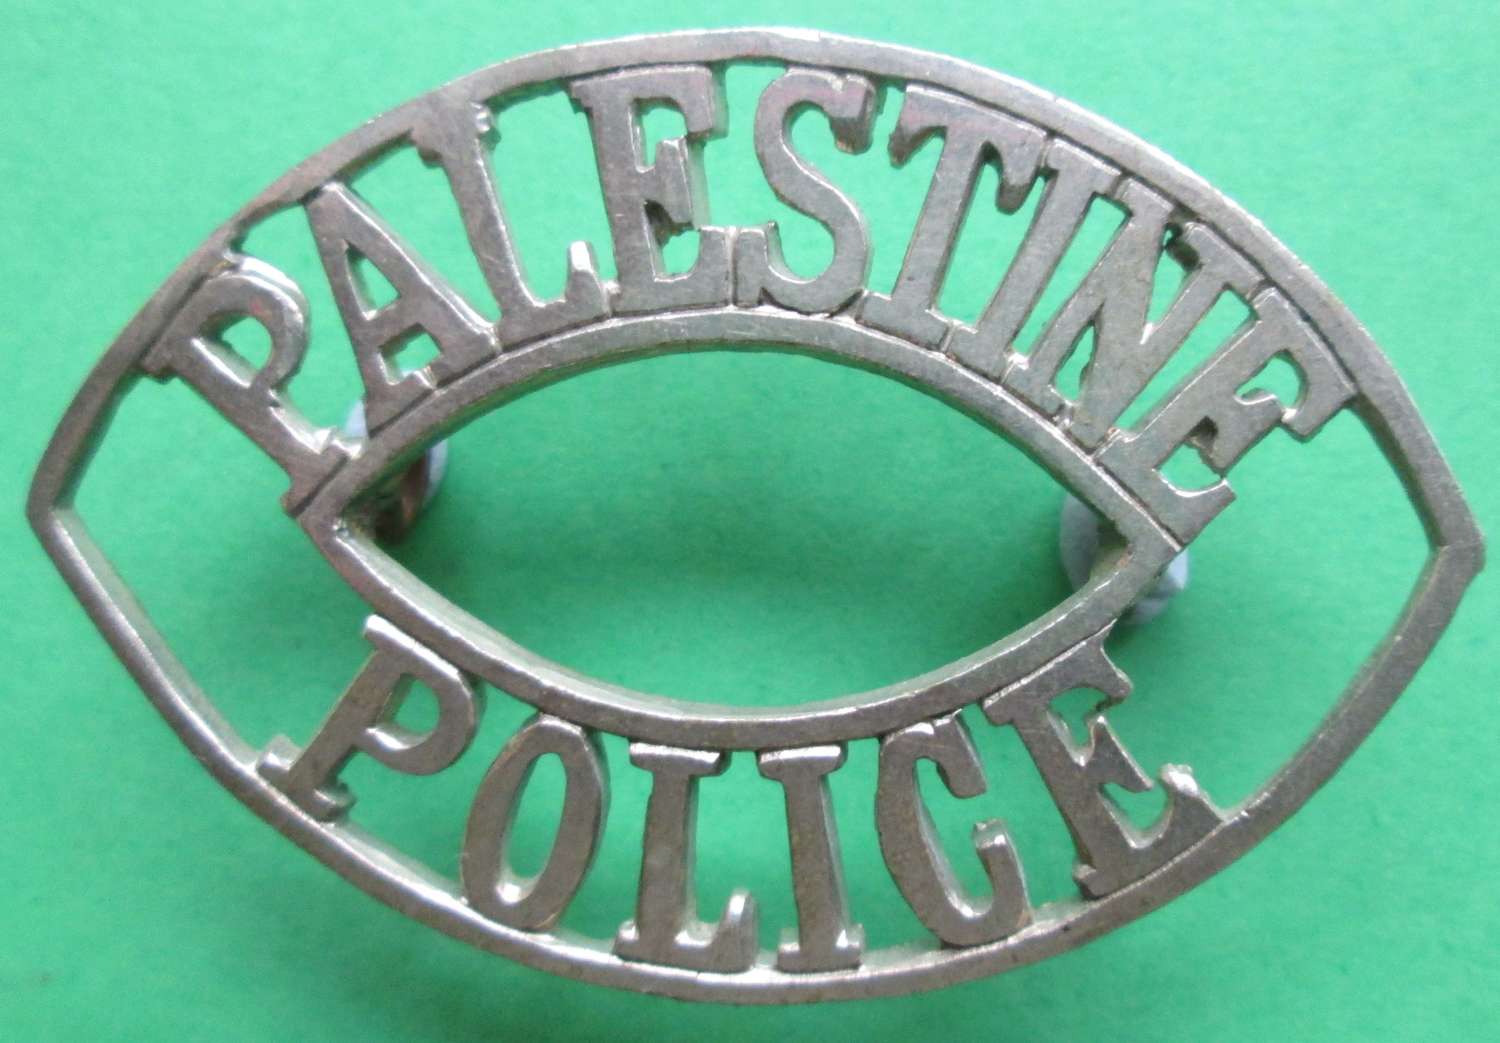 A PALESTINE POLICE SHOULDER TITLE